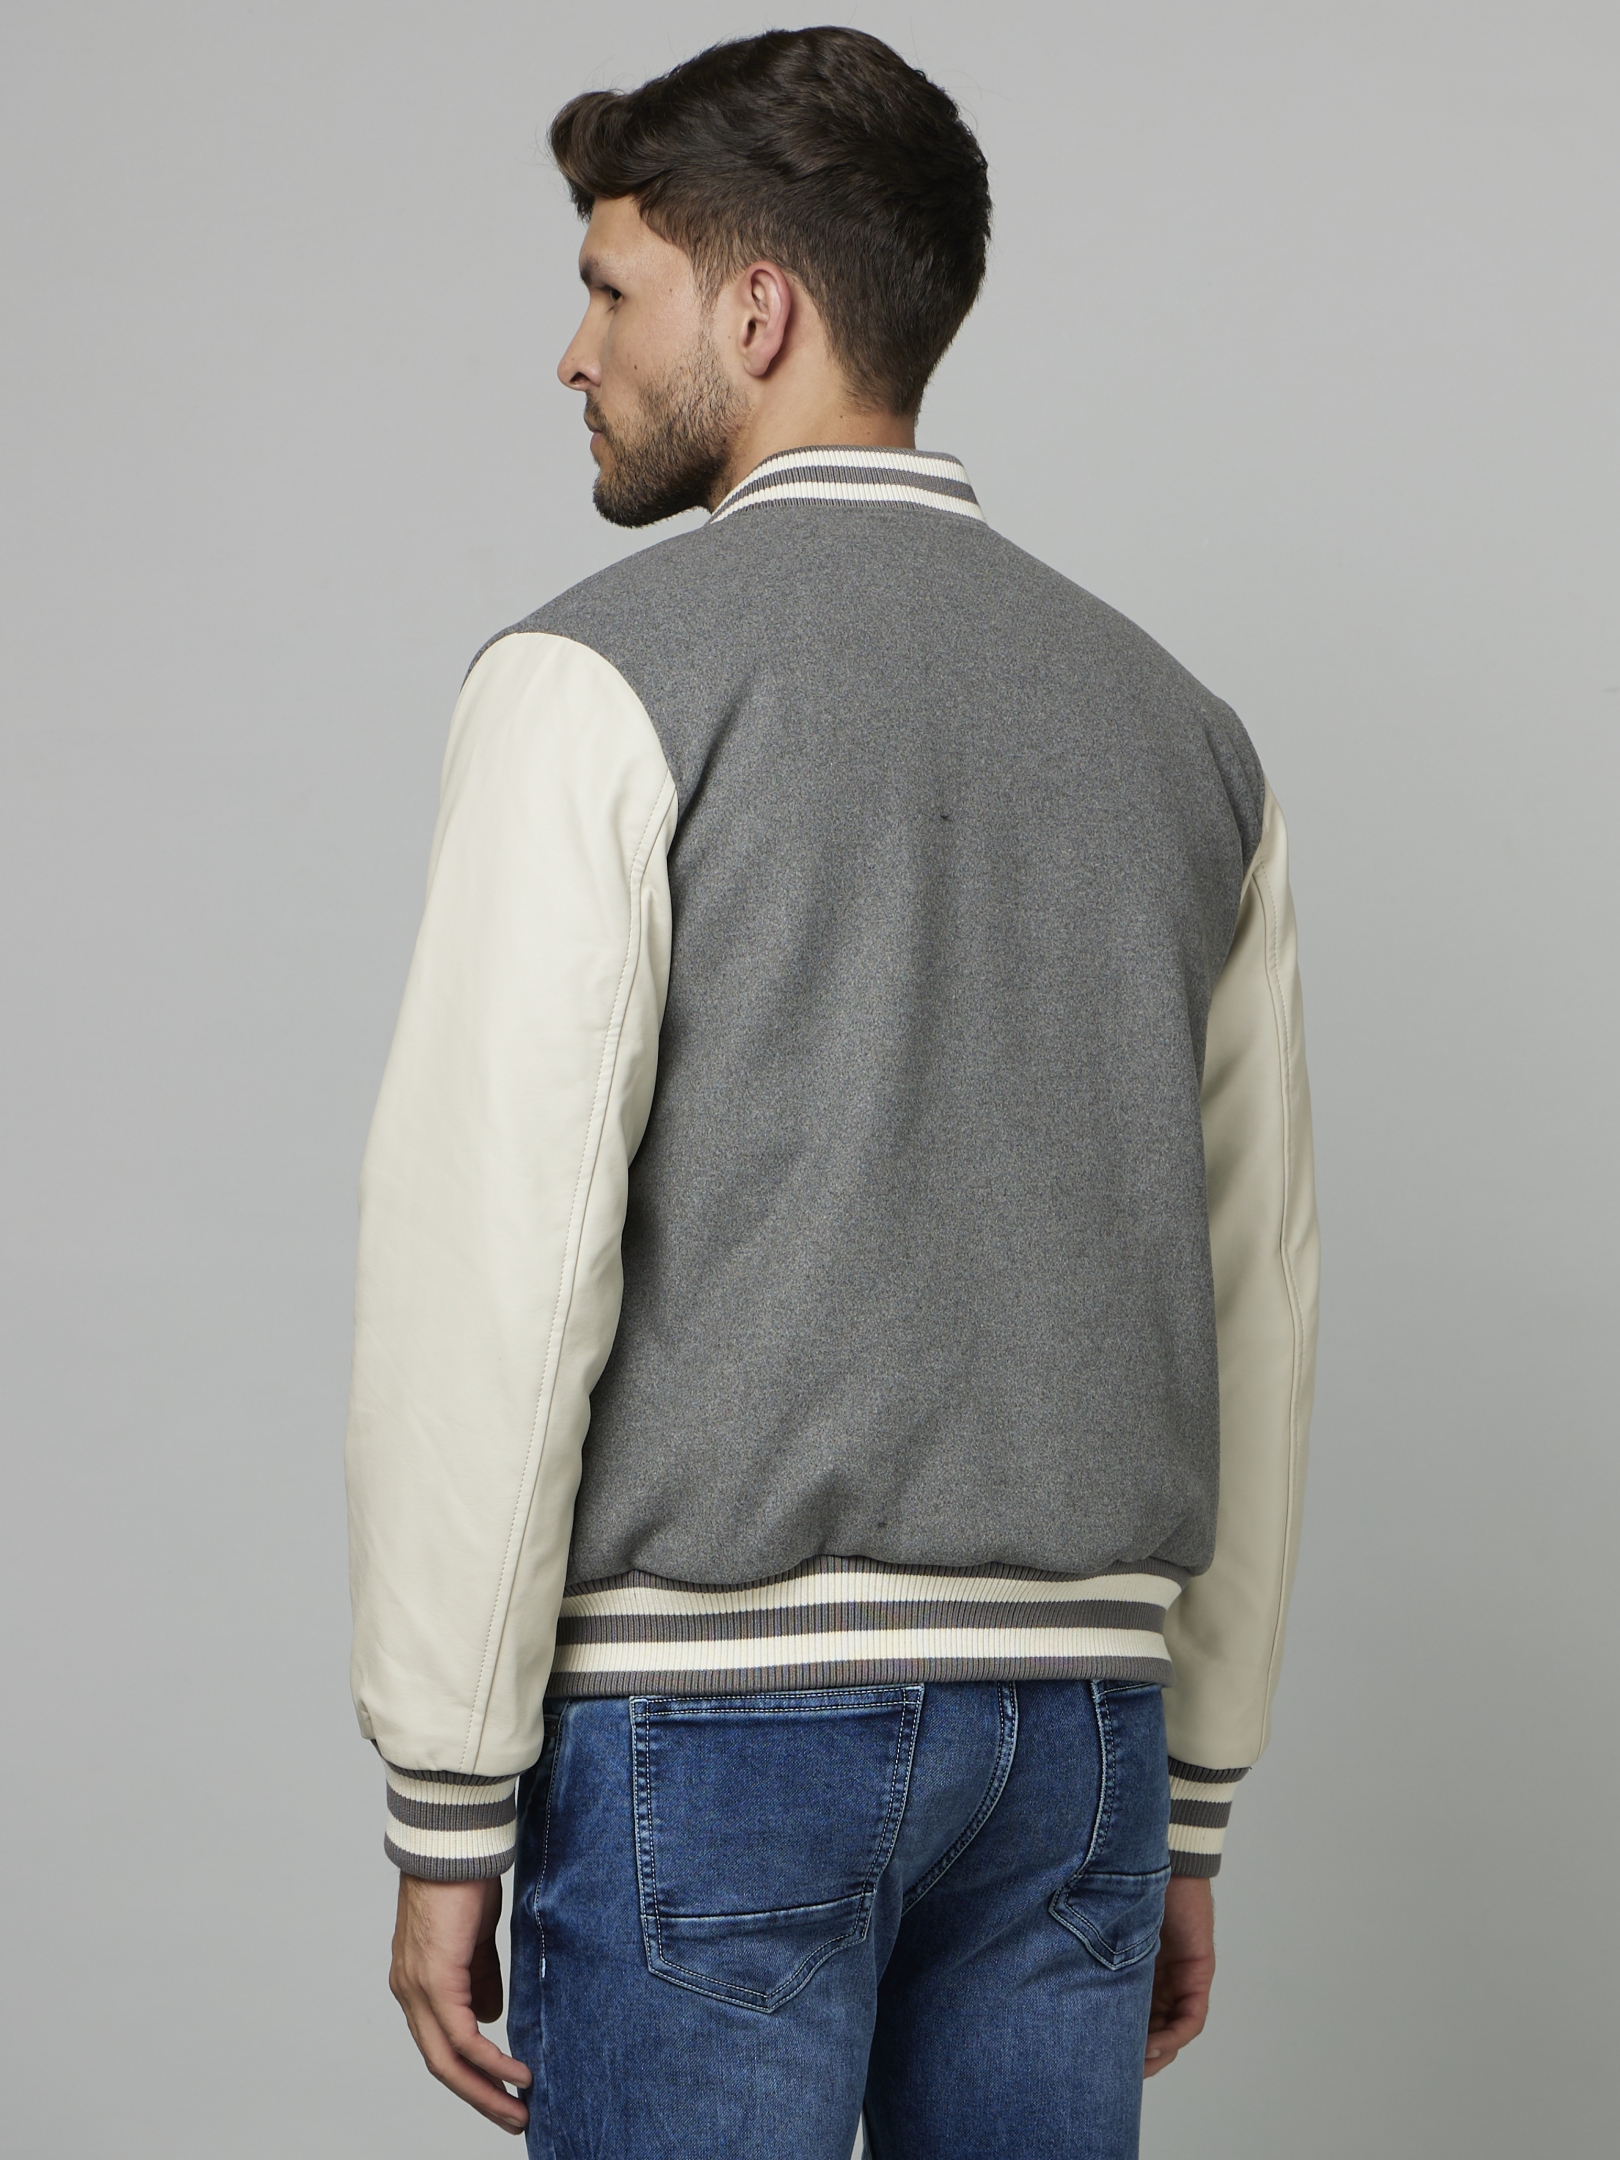 Men's Grey Colourblock Varsity Jackets